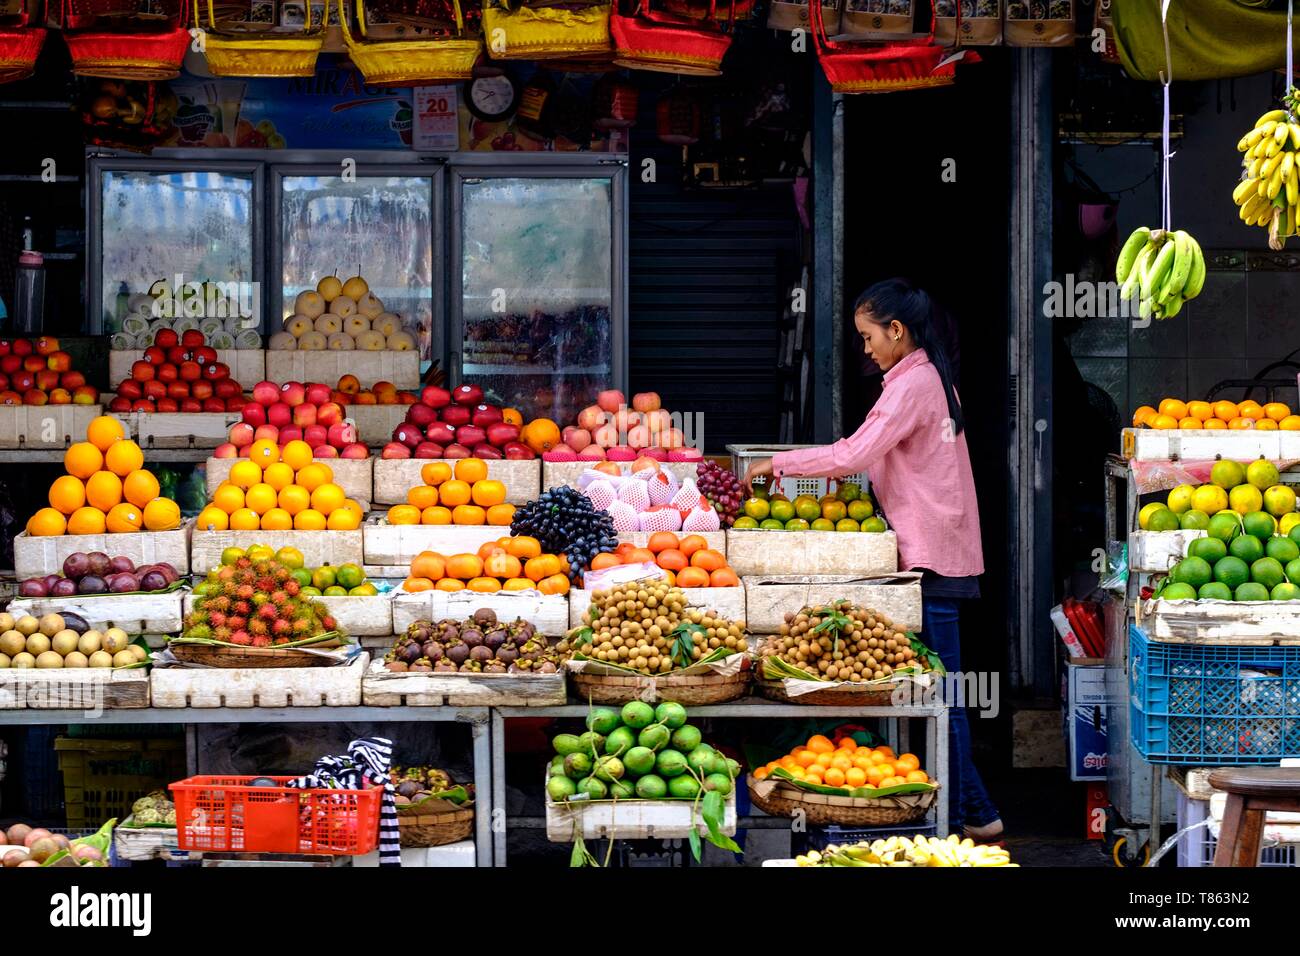 Cambodia, Phnom Penh, fruit stall at the market Stock Photo